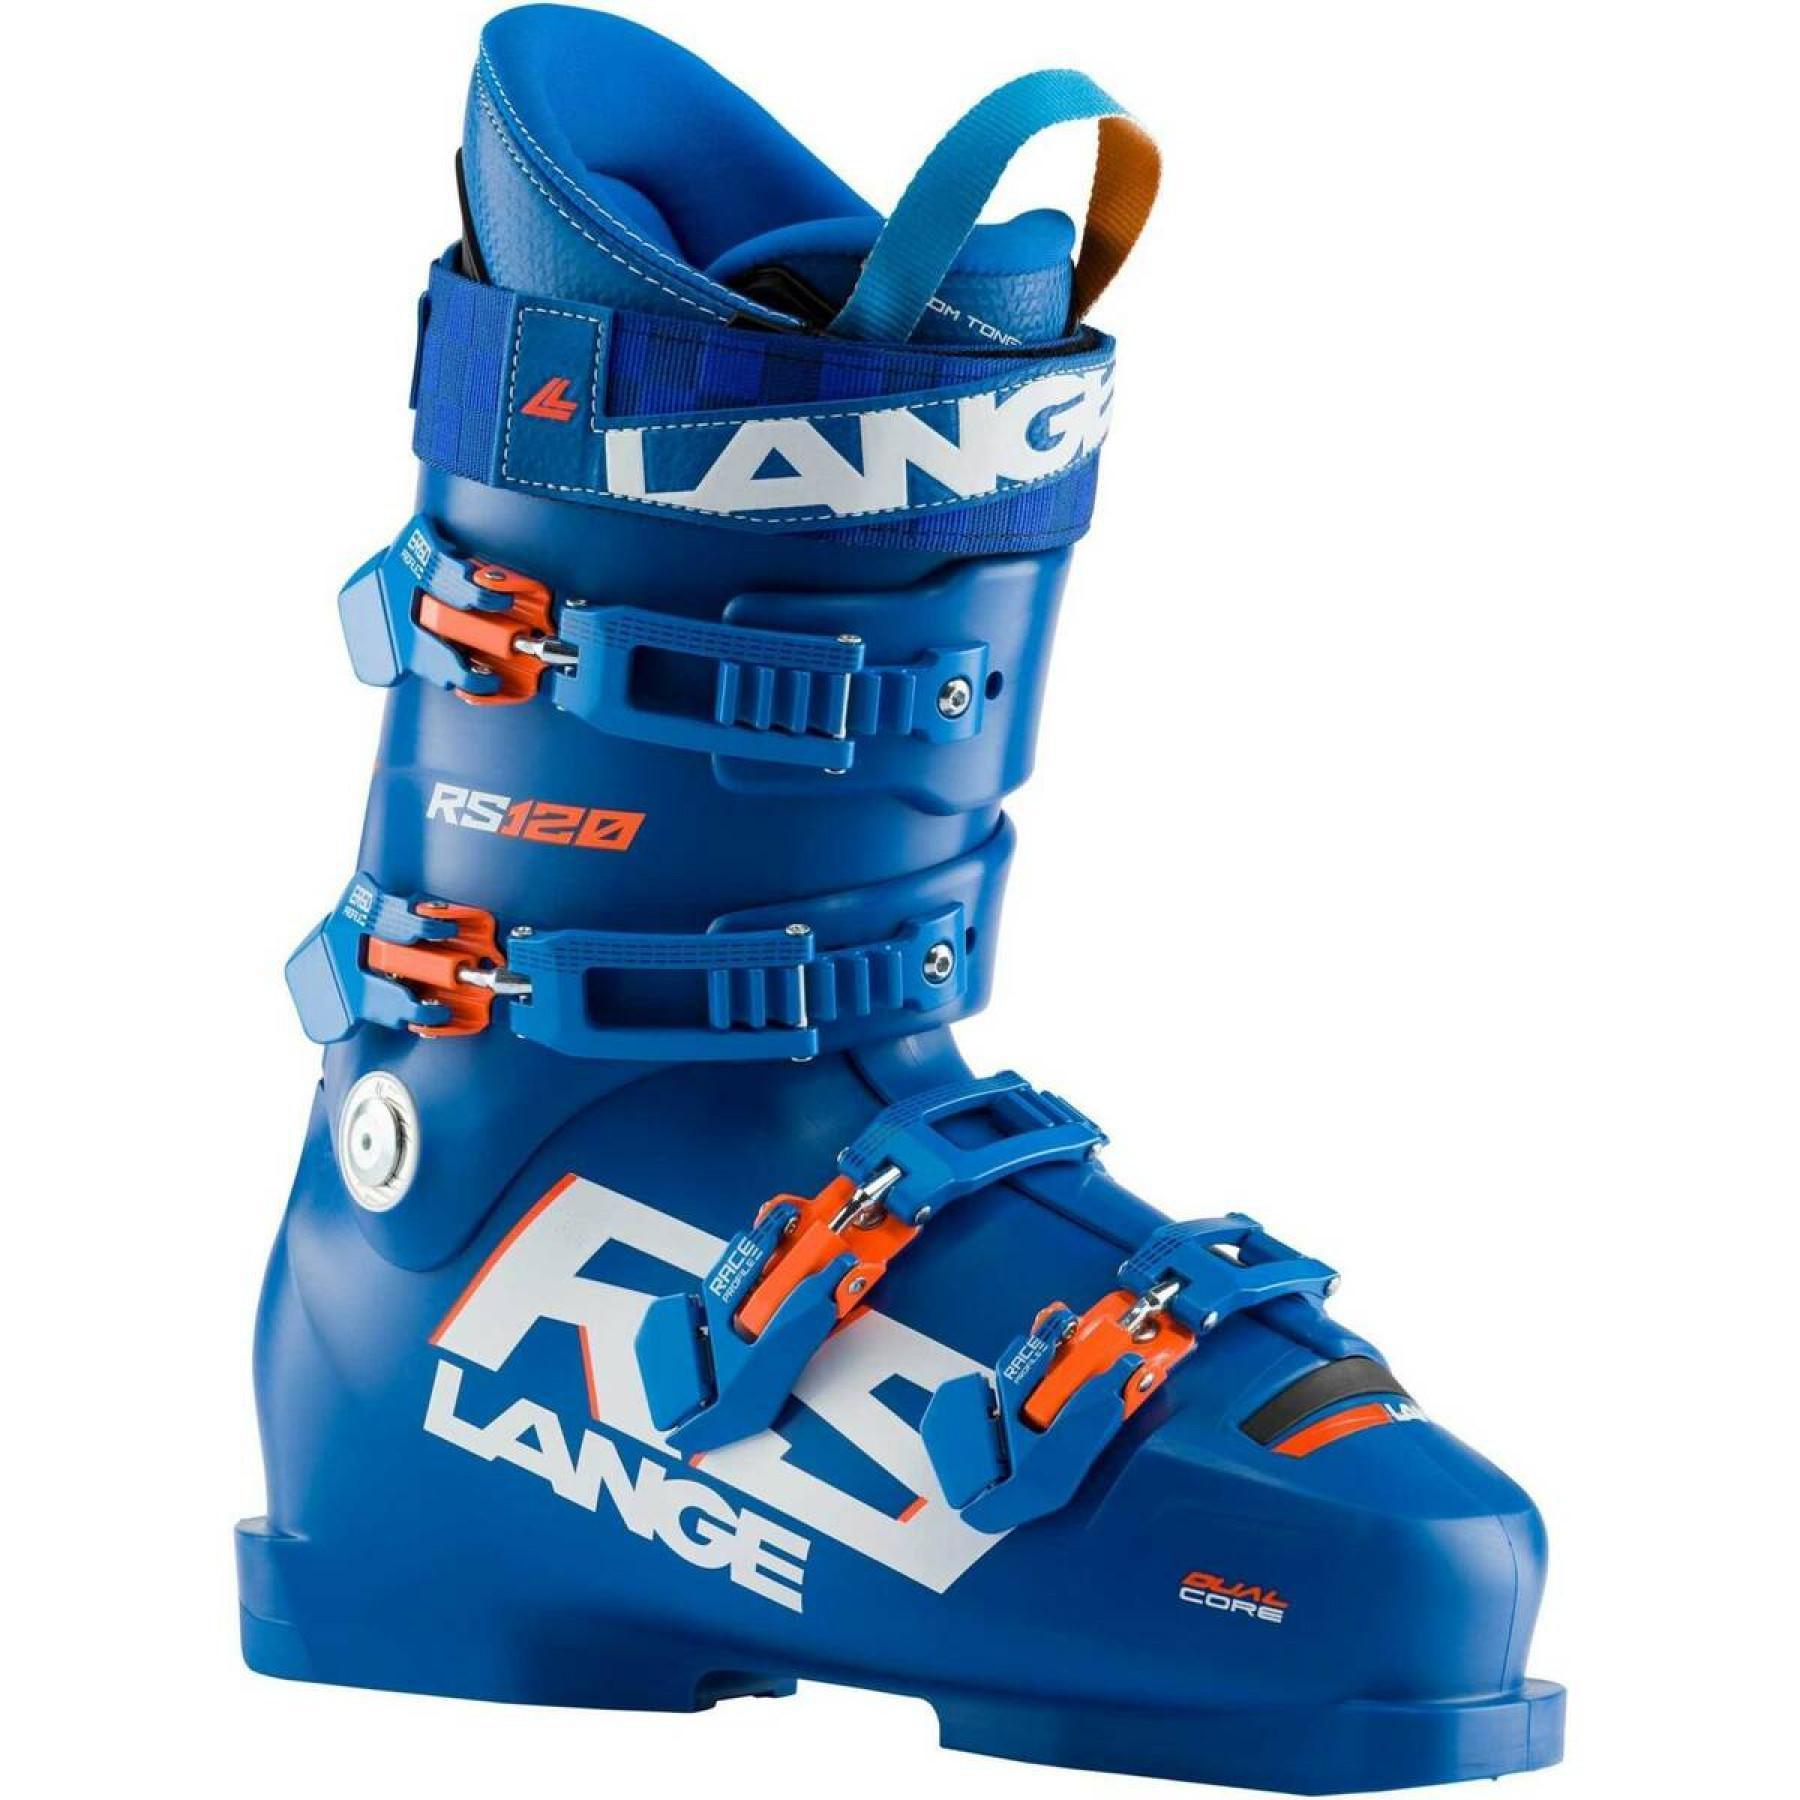 Buty narciarskie Lange rs 120